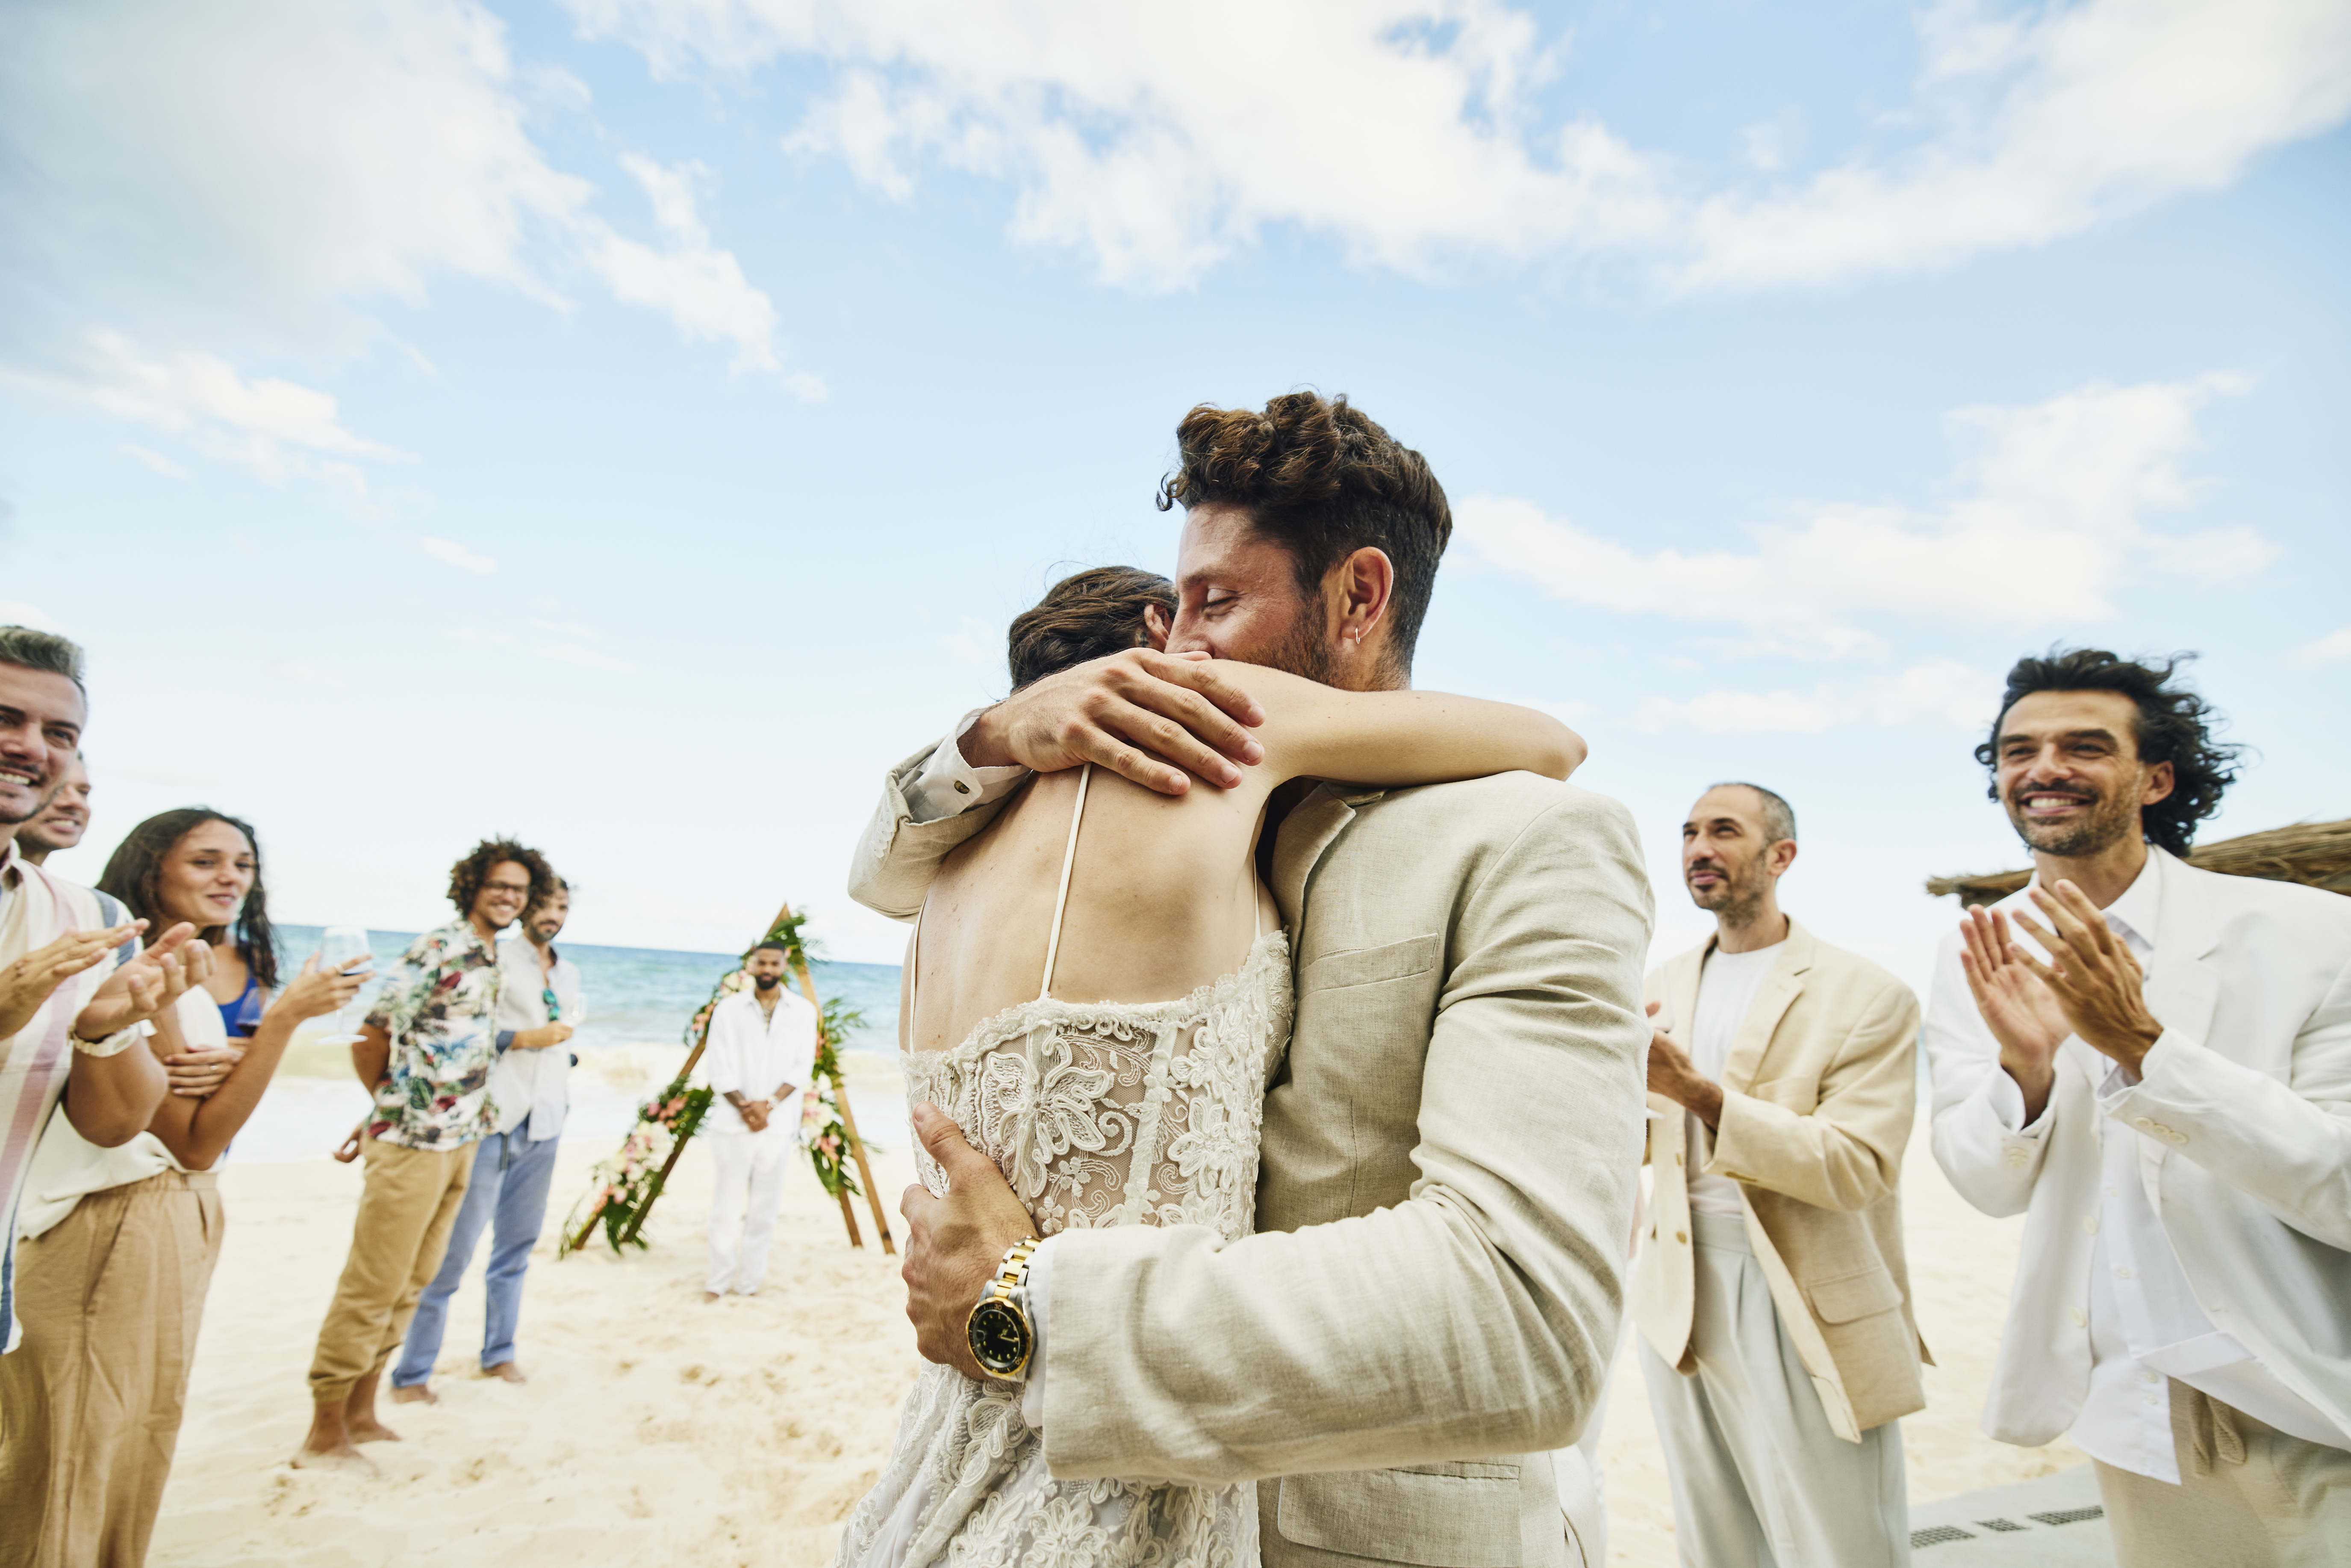 Novios abrazados después de la boda en una playa | Foto: Getty Images